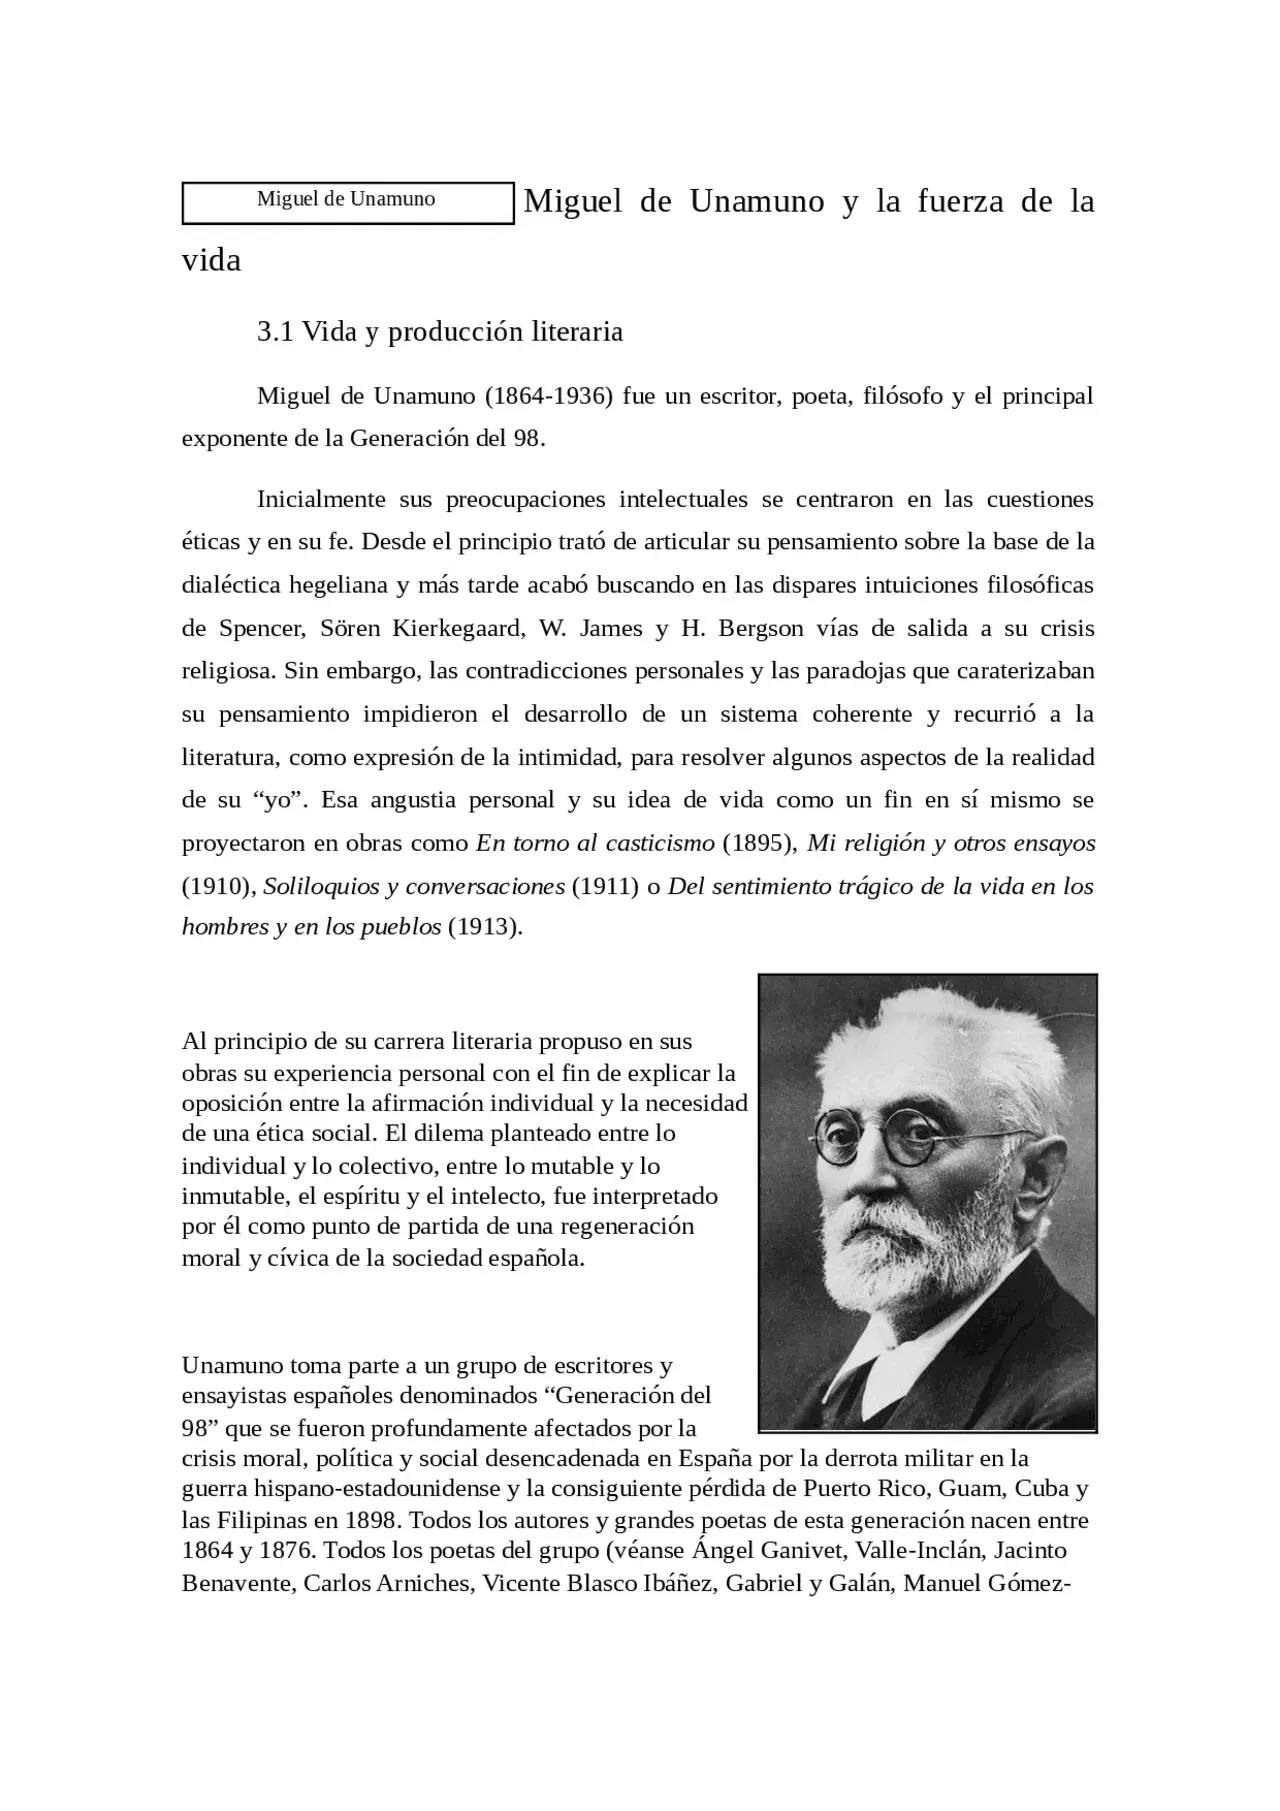 biografia de miguel de unamuno resumen - Qué ideología tenía Miguel de Unamuno